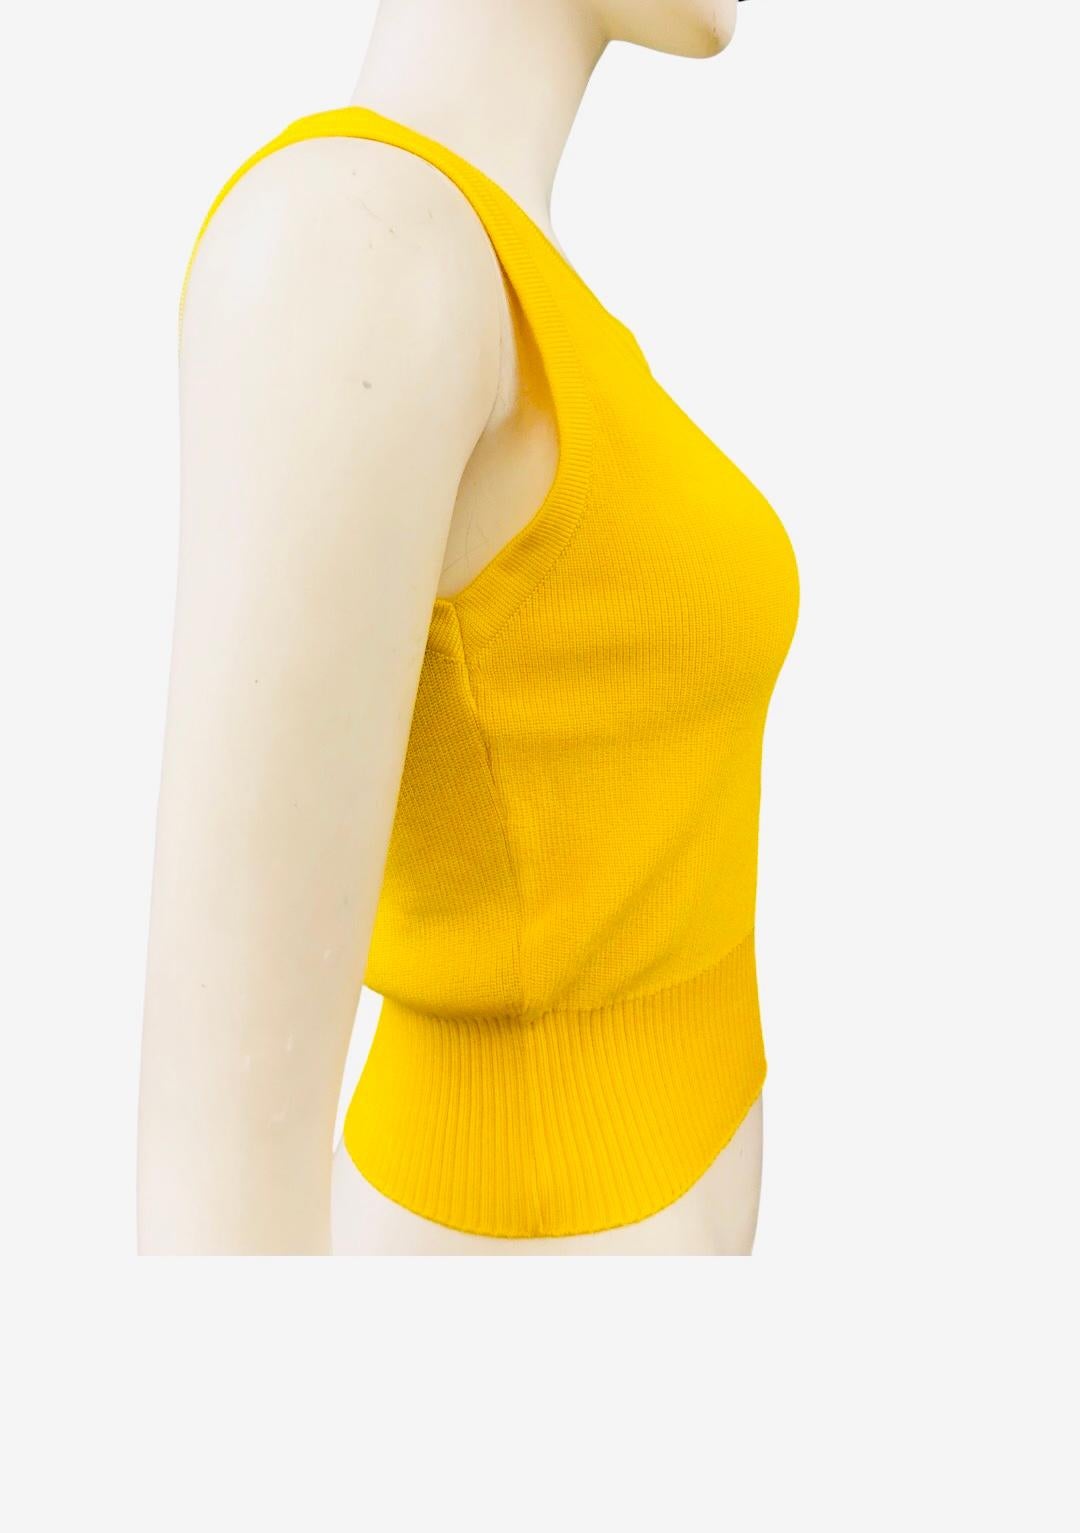 - Débardeur vintage Chanel en tricot jaune avec logo CC de la collection printemps 1996. 

- Ourlet côtelé. 

- Taille 42. 

- 53% Rayon, 47% Coton. 